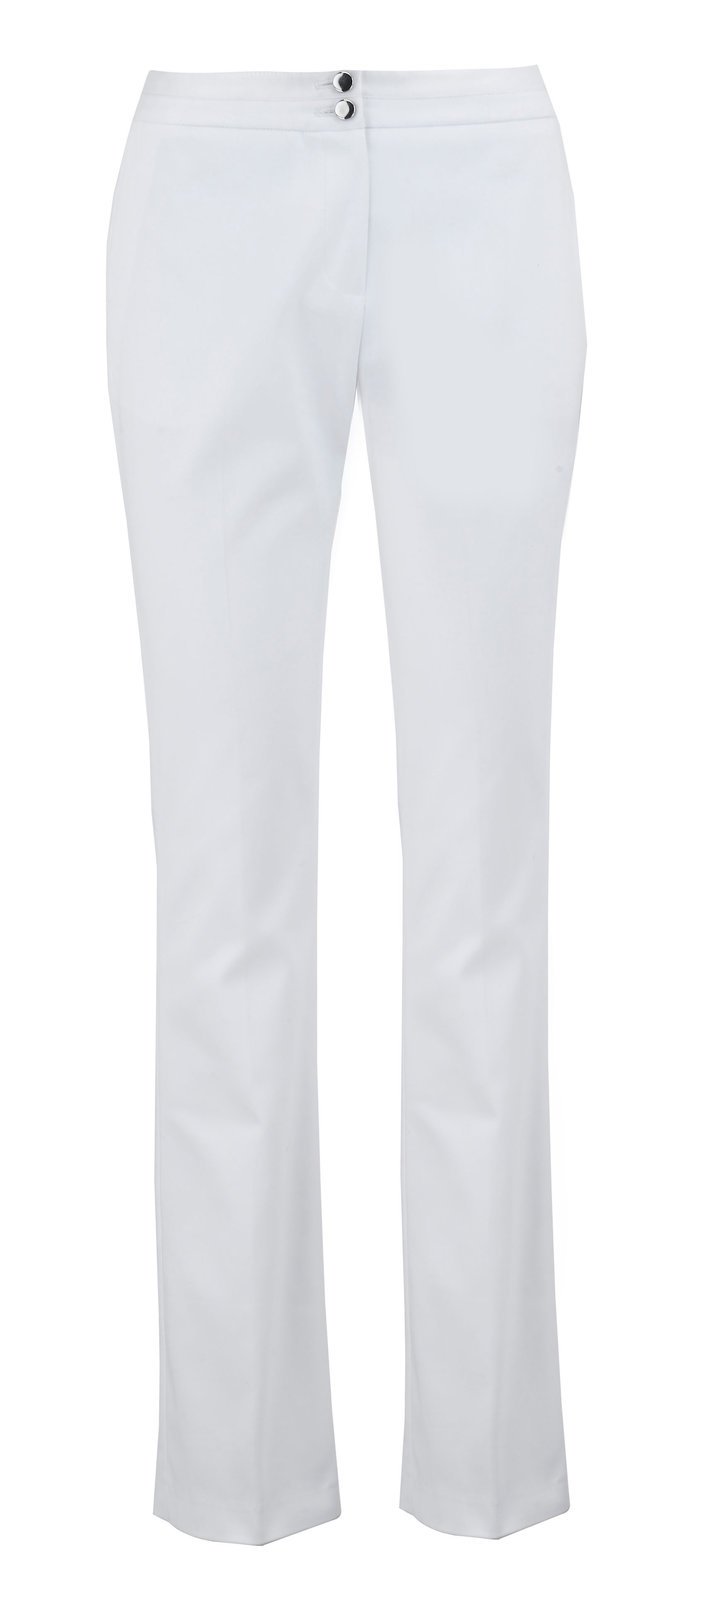 Bílé kalhoty, Marks & Spencer, info o ceně v obchodě